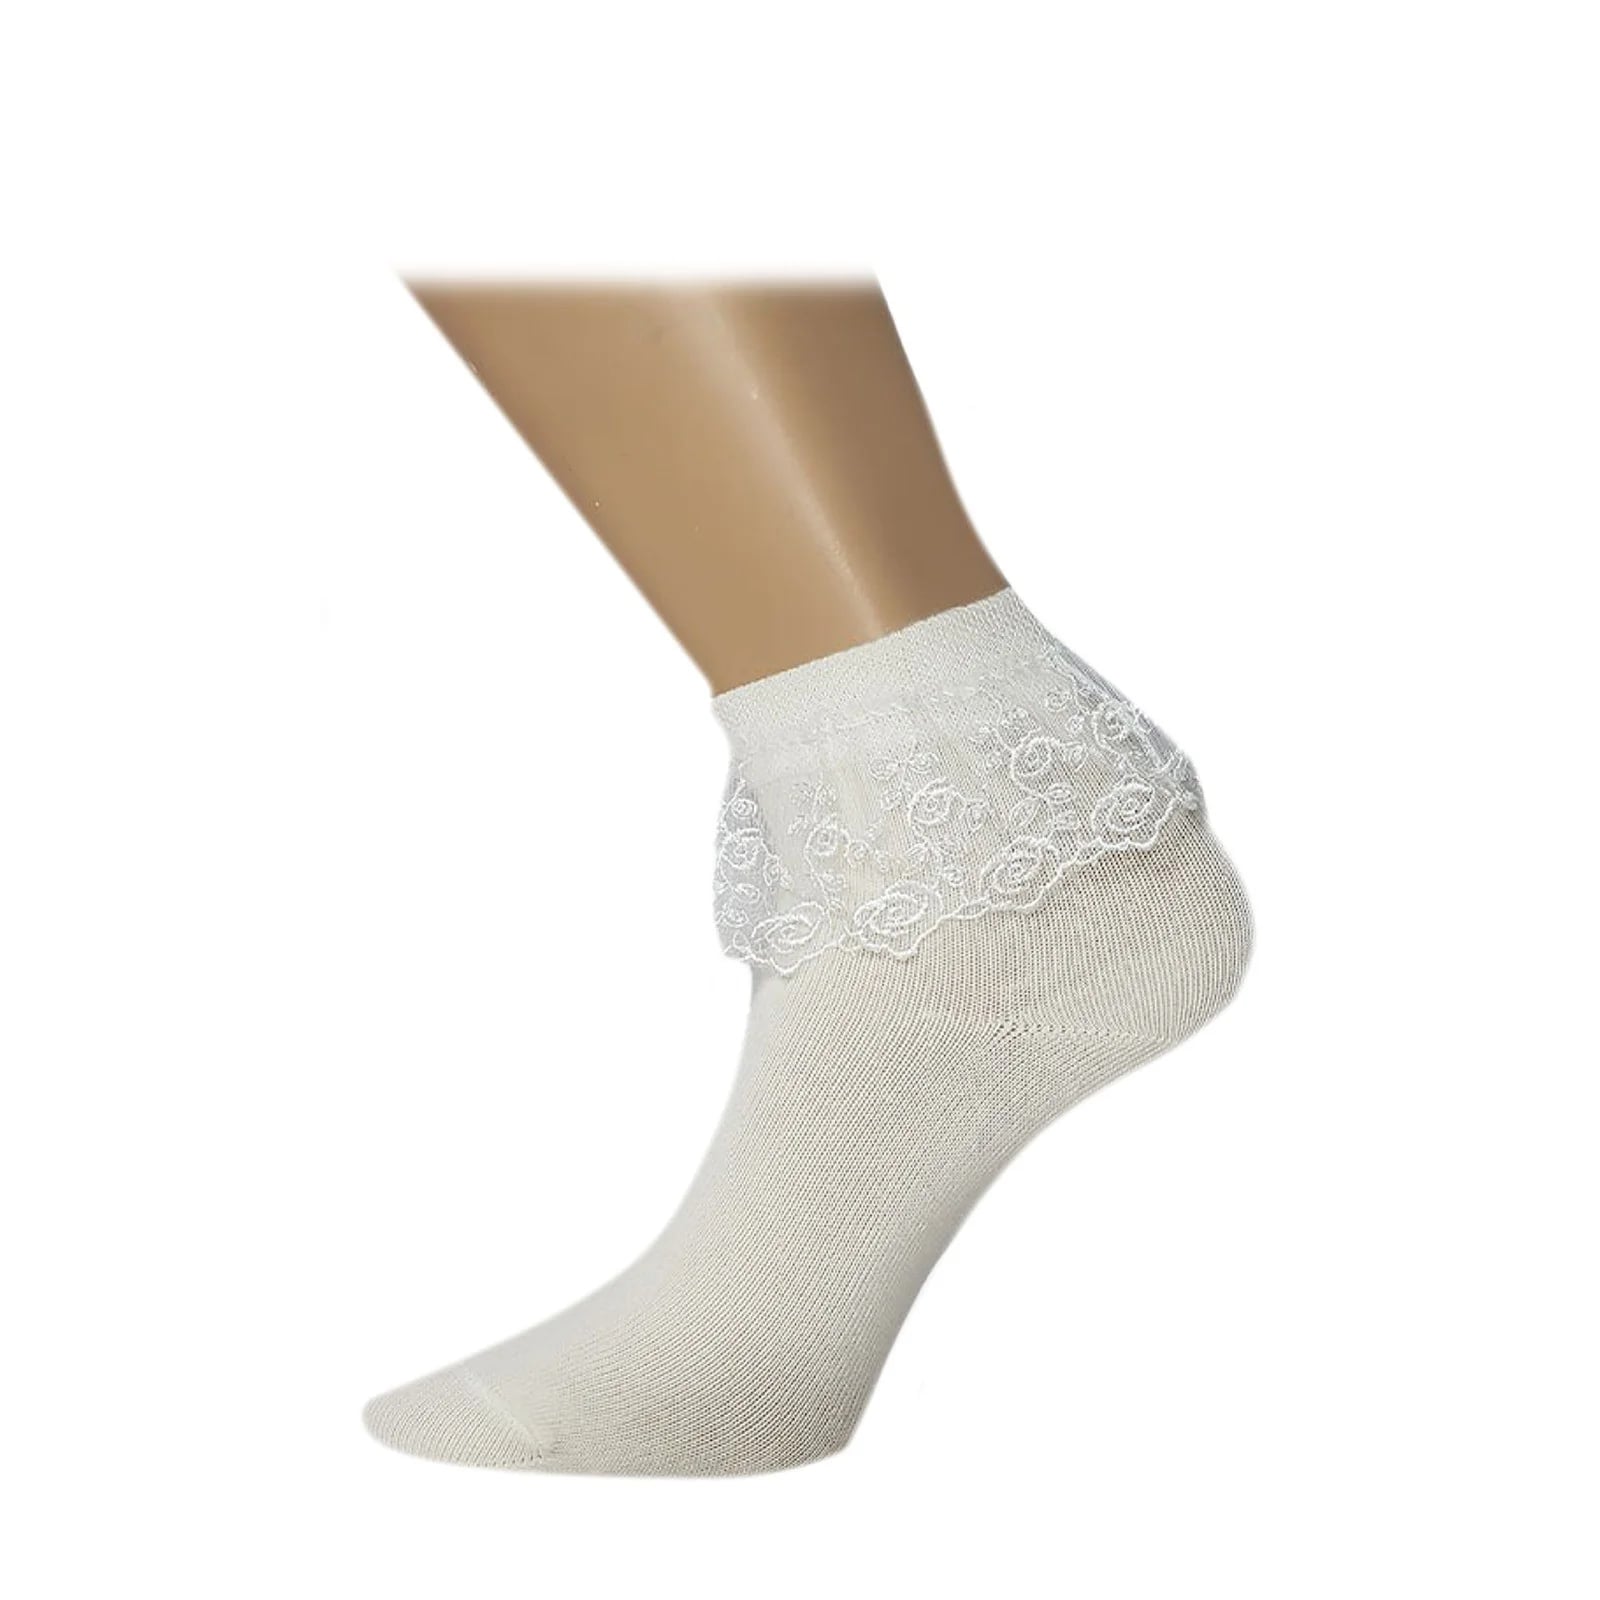 Orkinza Socks White Color From AL Samah